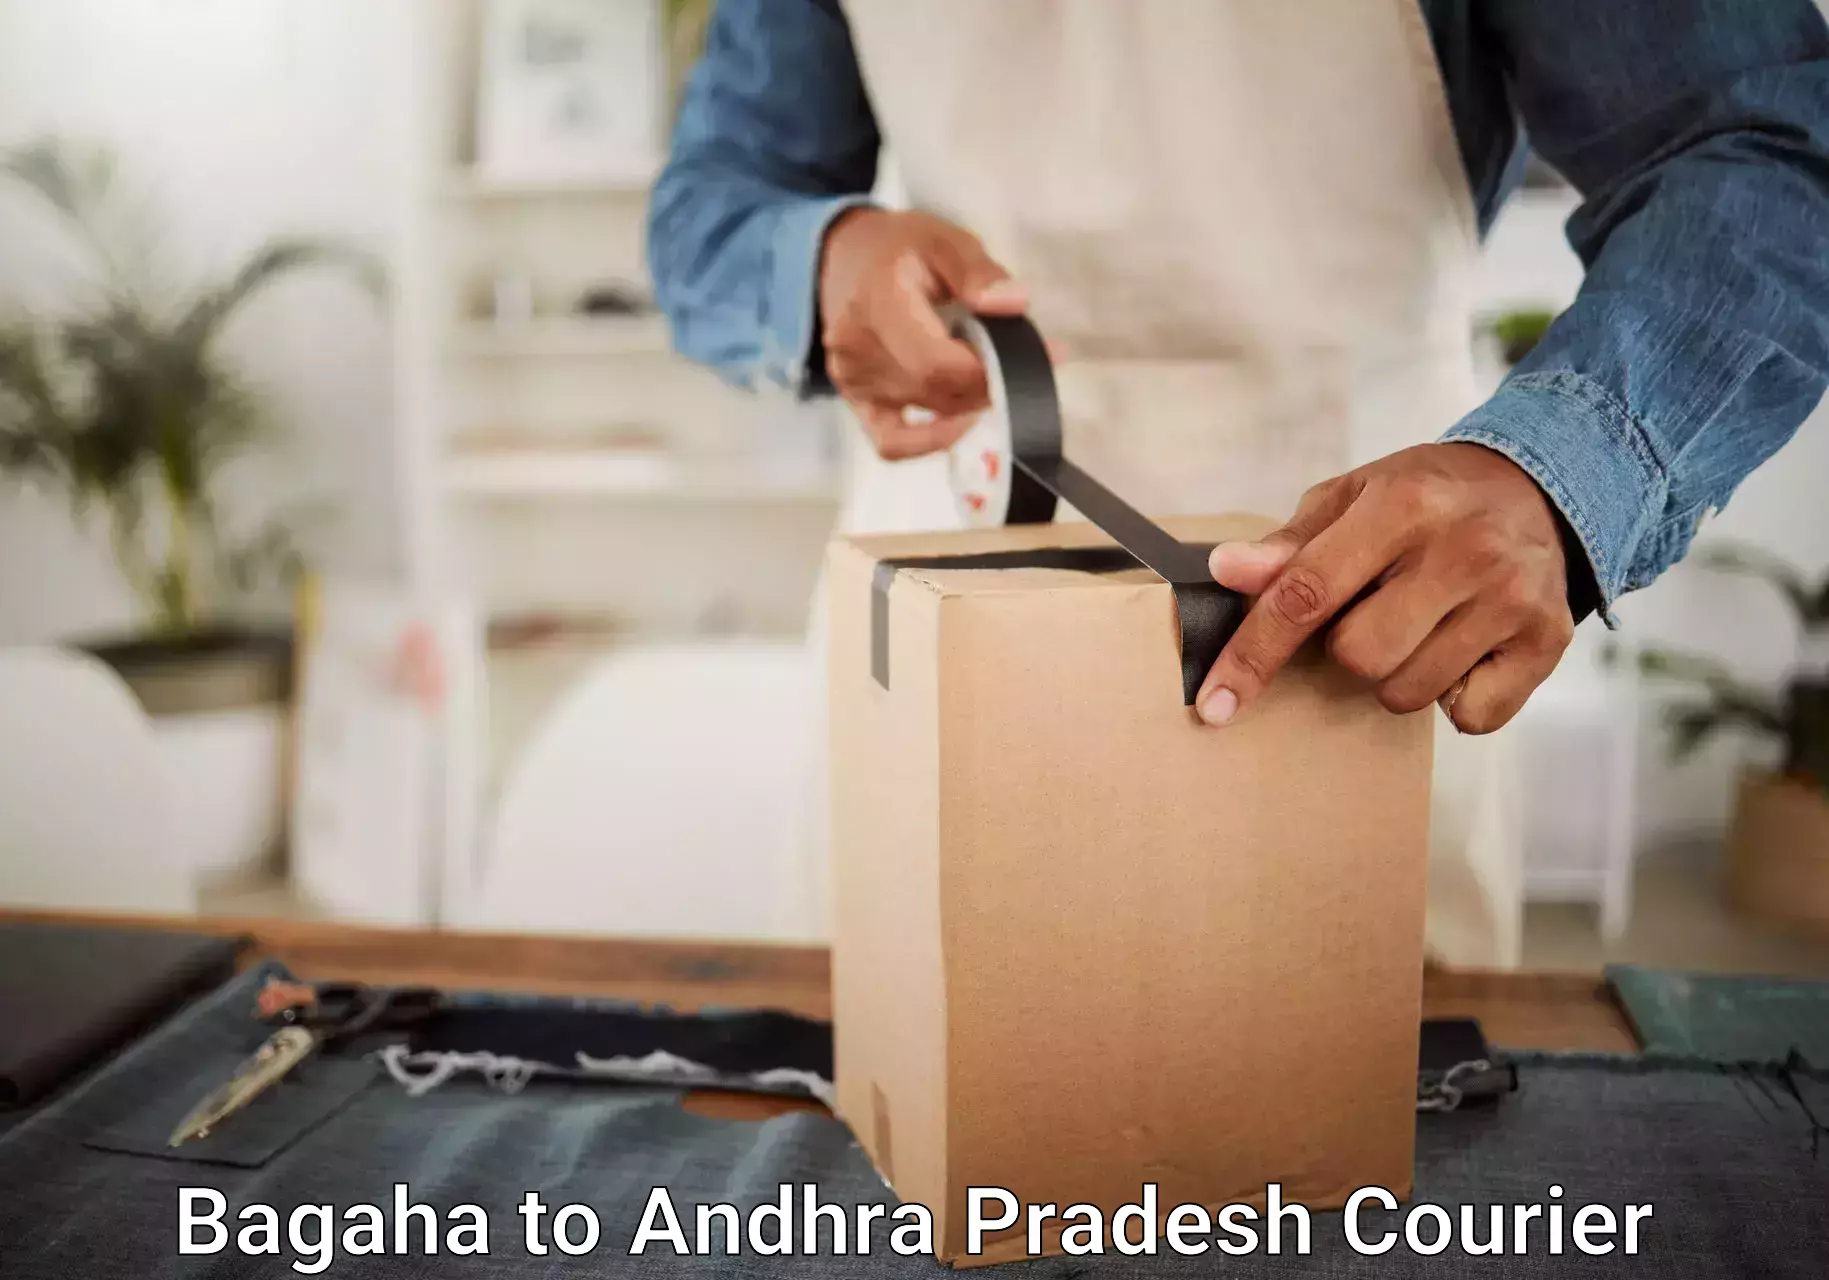 Baggage transport estimate Bagaha to Andhra Pradesh